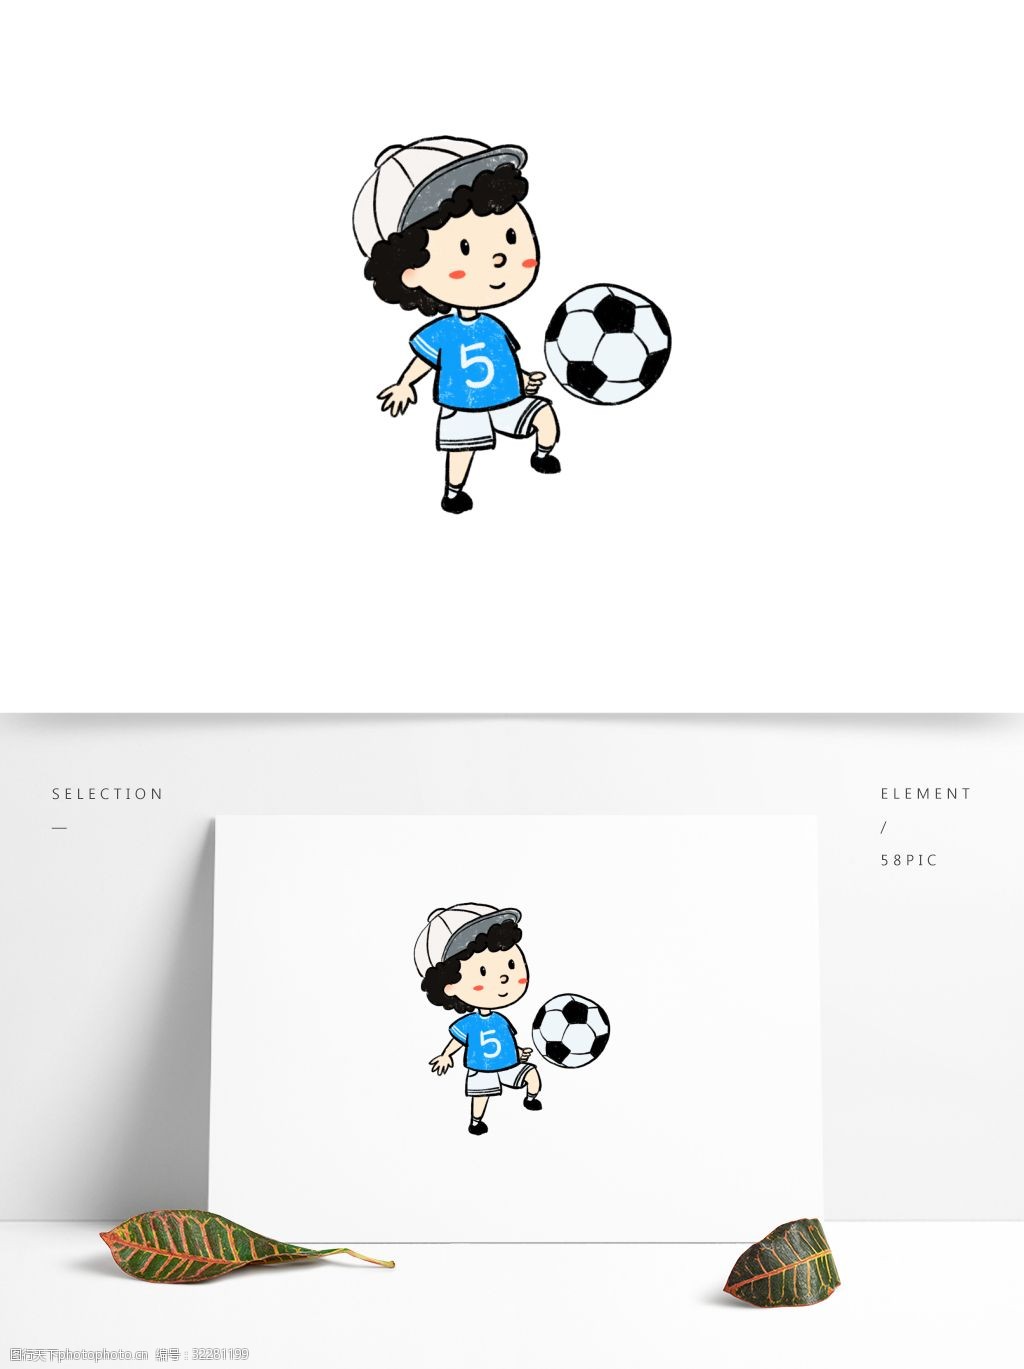 关键词:手绘运动足球少年 手绘 足球 运动 体育 活力 少年 儿童 校园